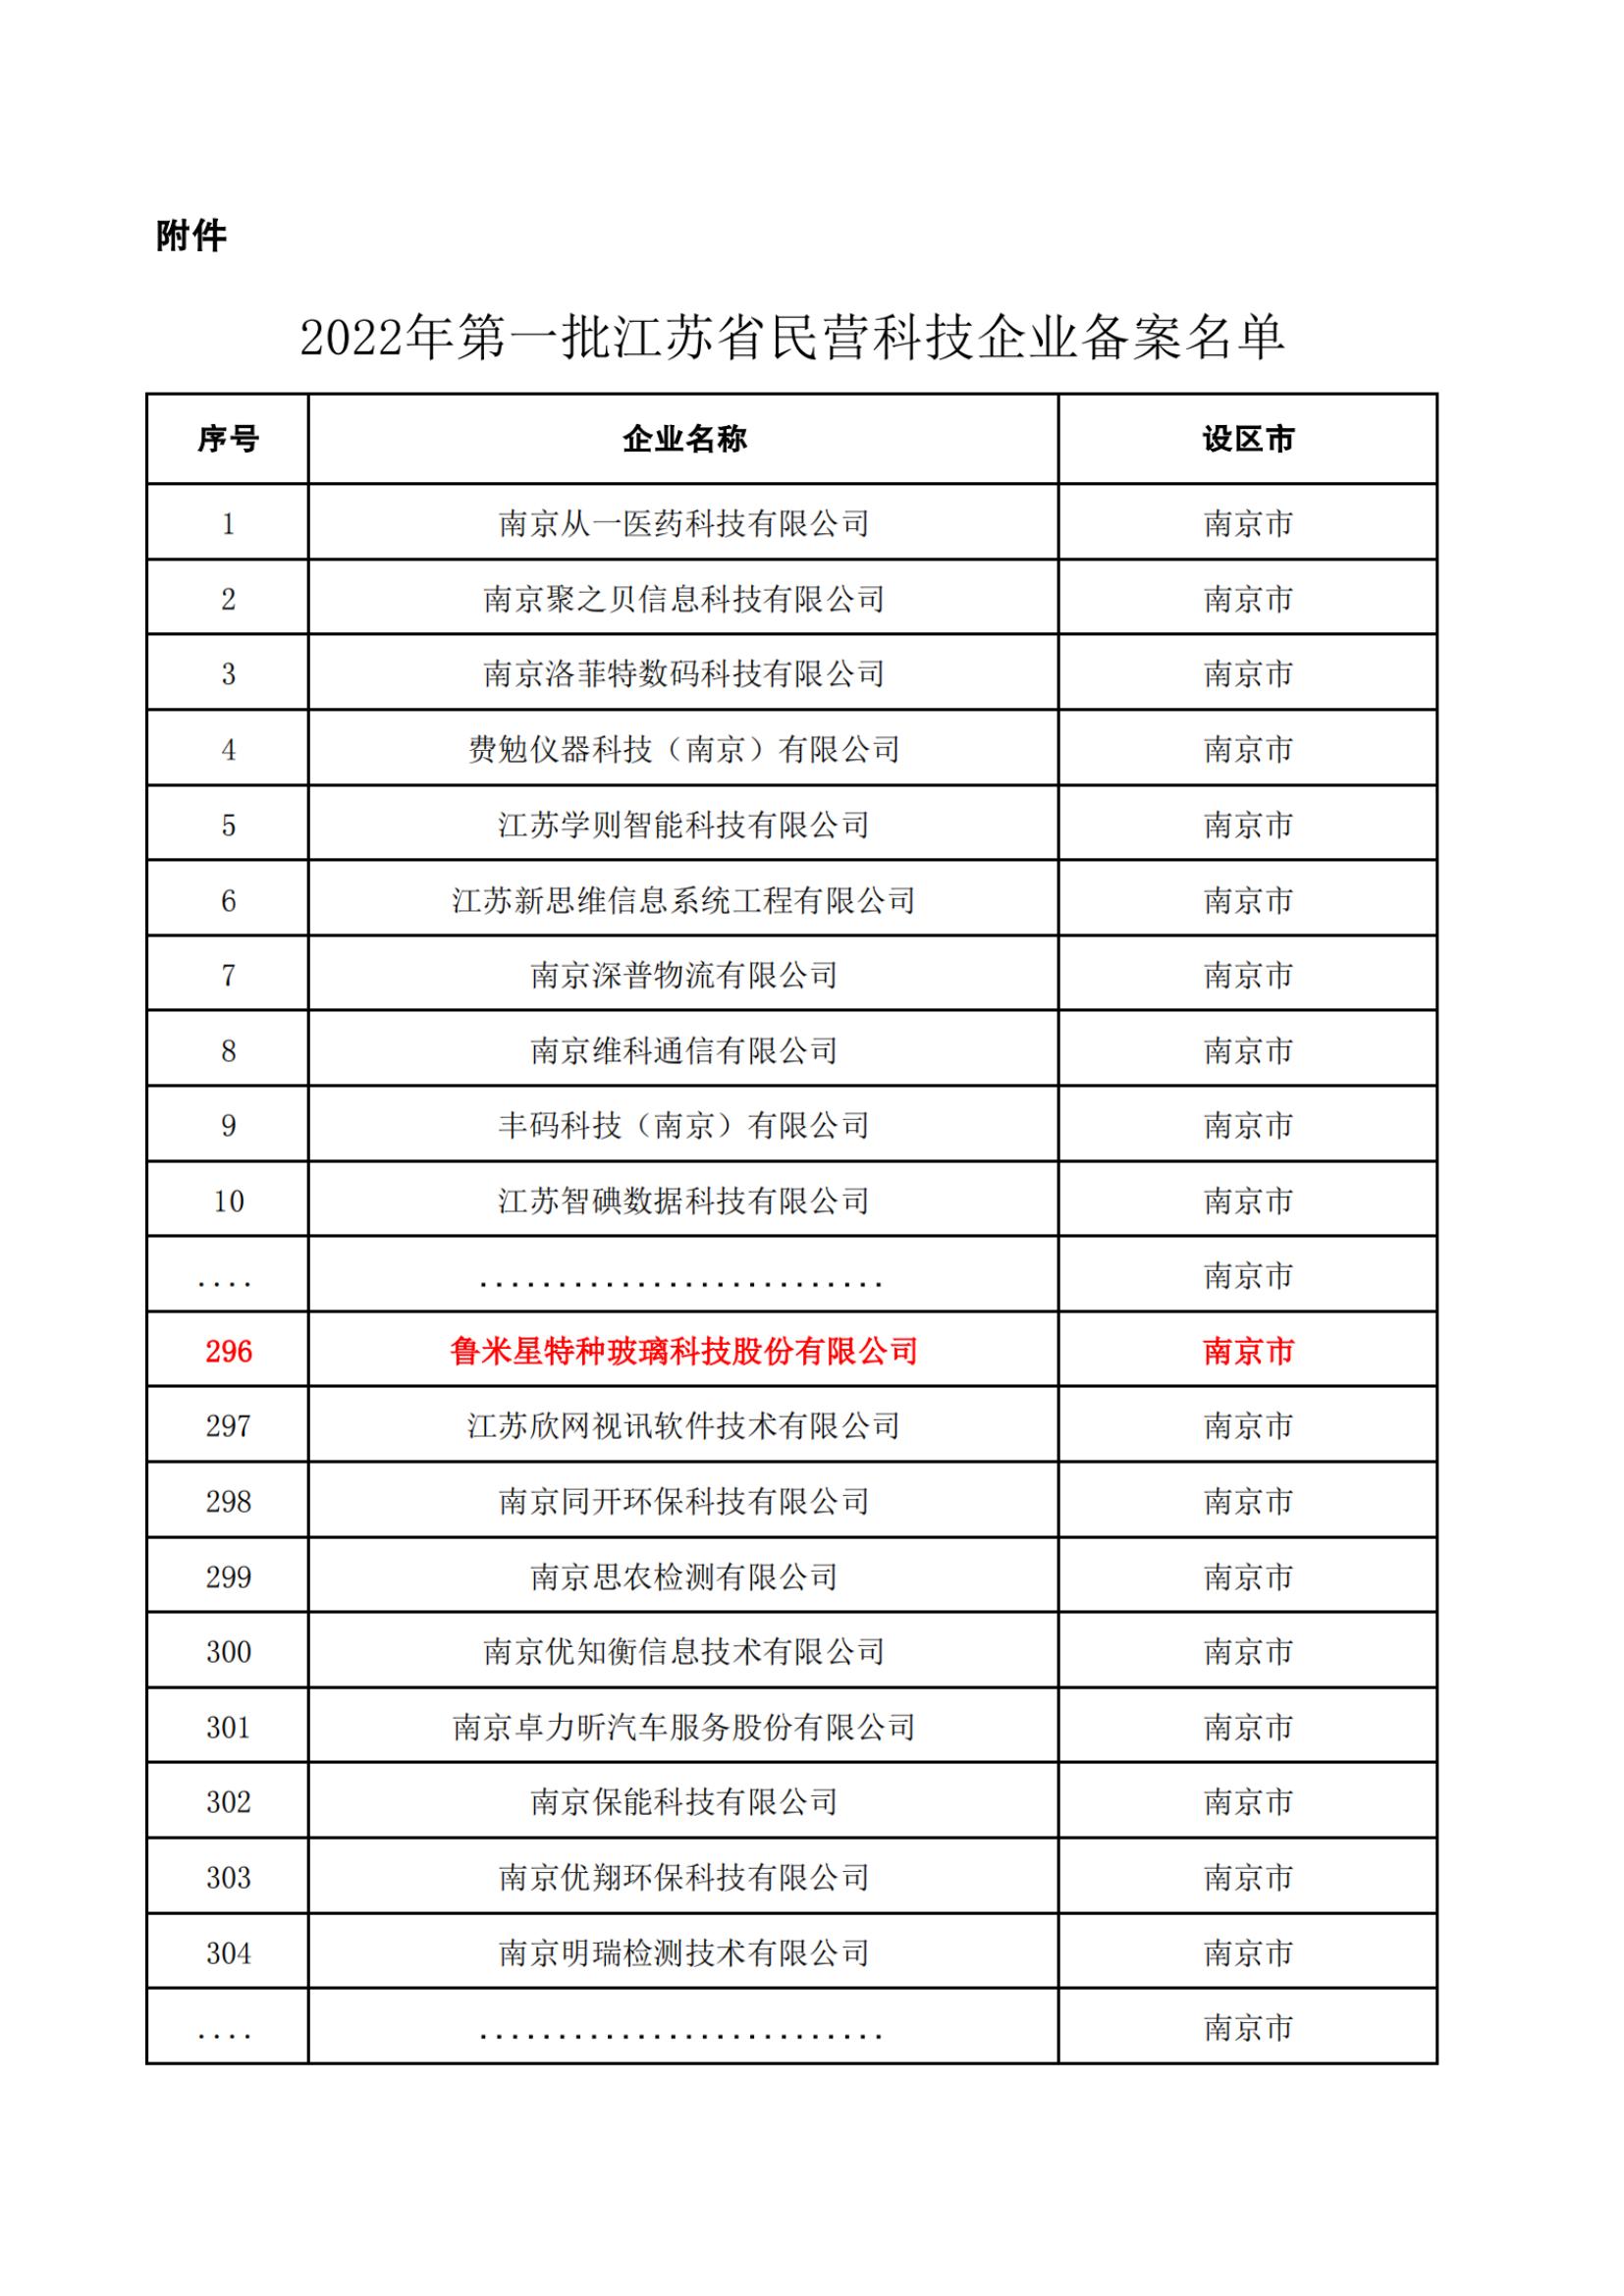 金沙js6666登录入口通过“2022年第一批江苏省民营科技企业公示名单”